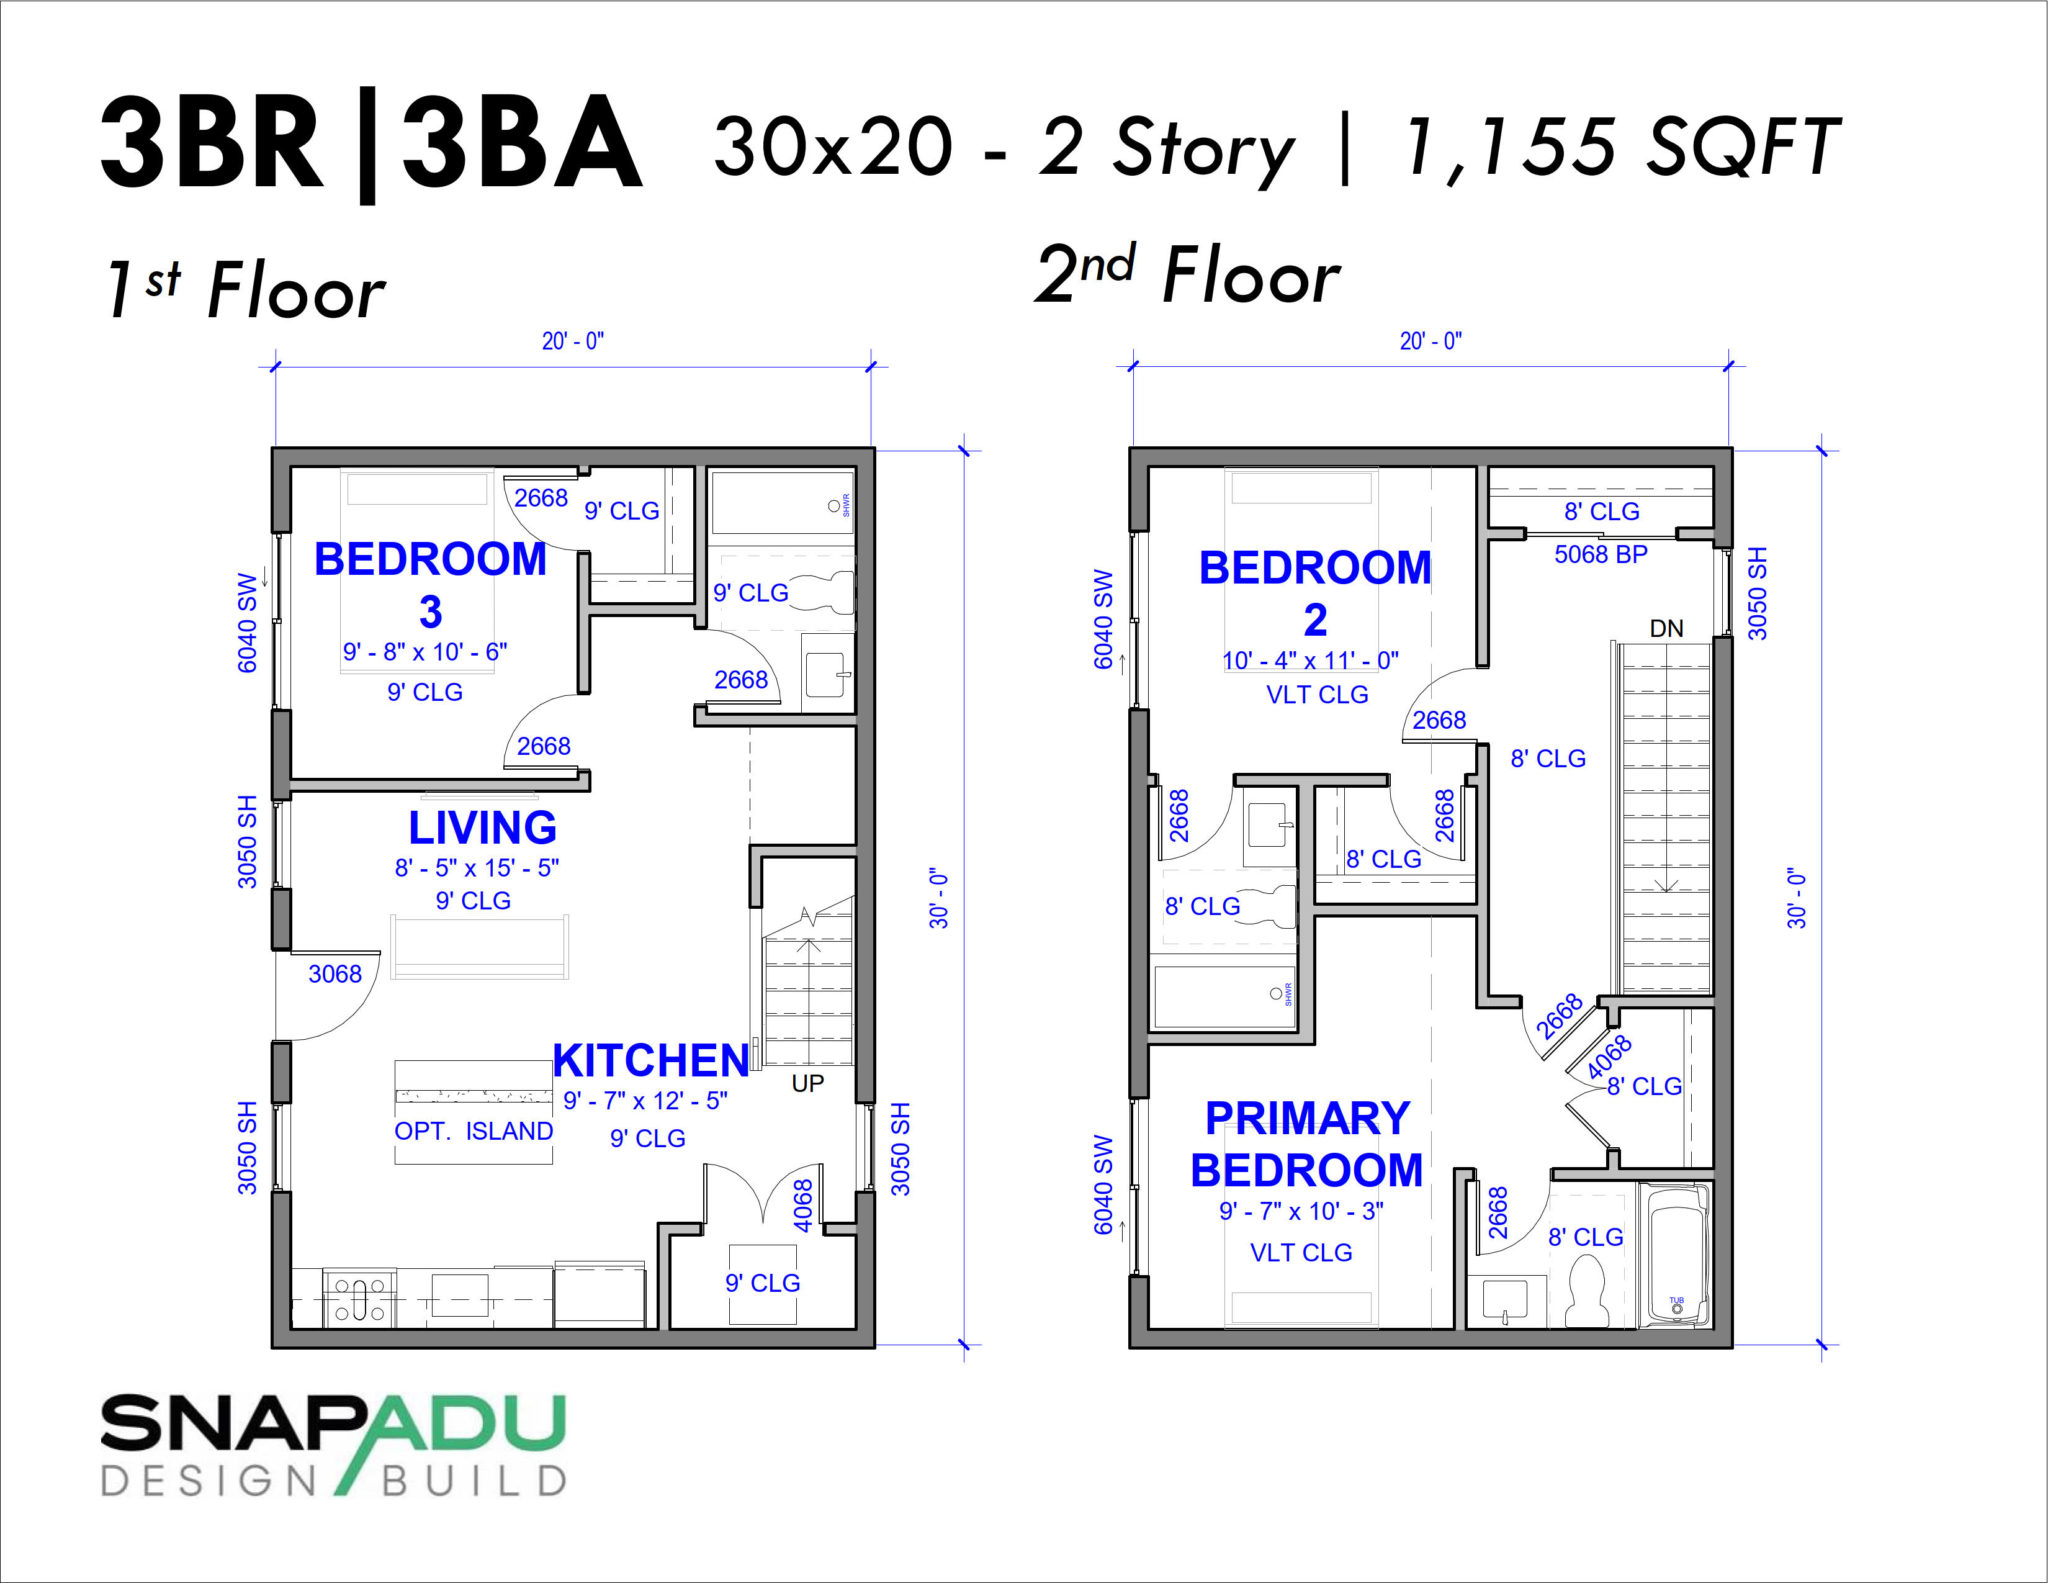 2 Story Snap ADU Floor Plan 3BR 3BA 1155 SF 30x20 1st Floor Bedroom 2 Bedrooms 2 Baths Upstairs 1200 sqft